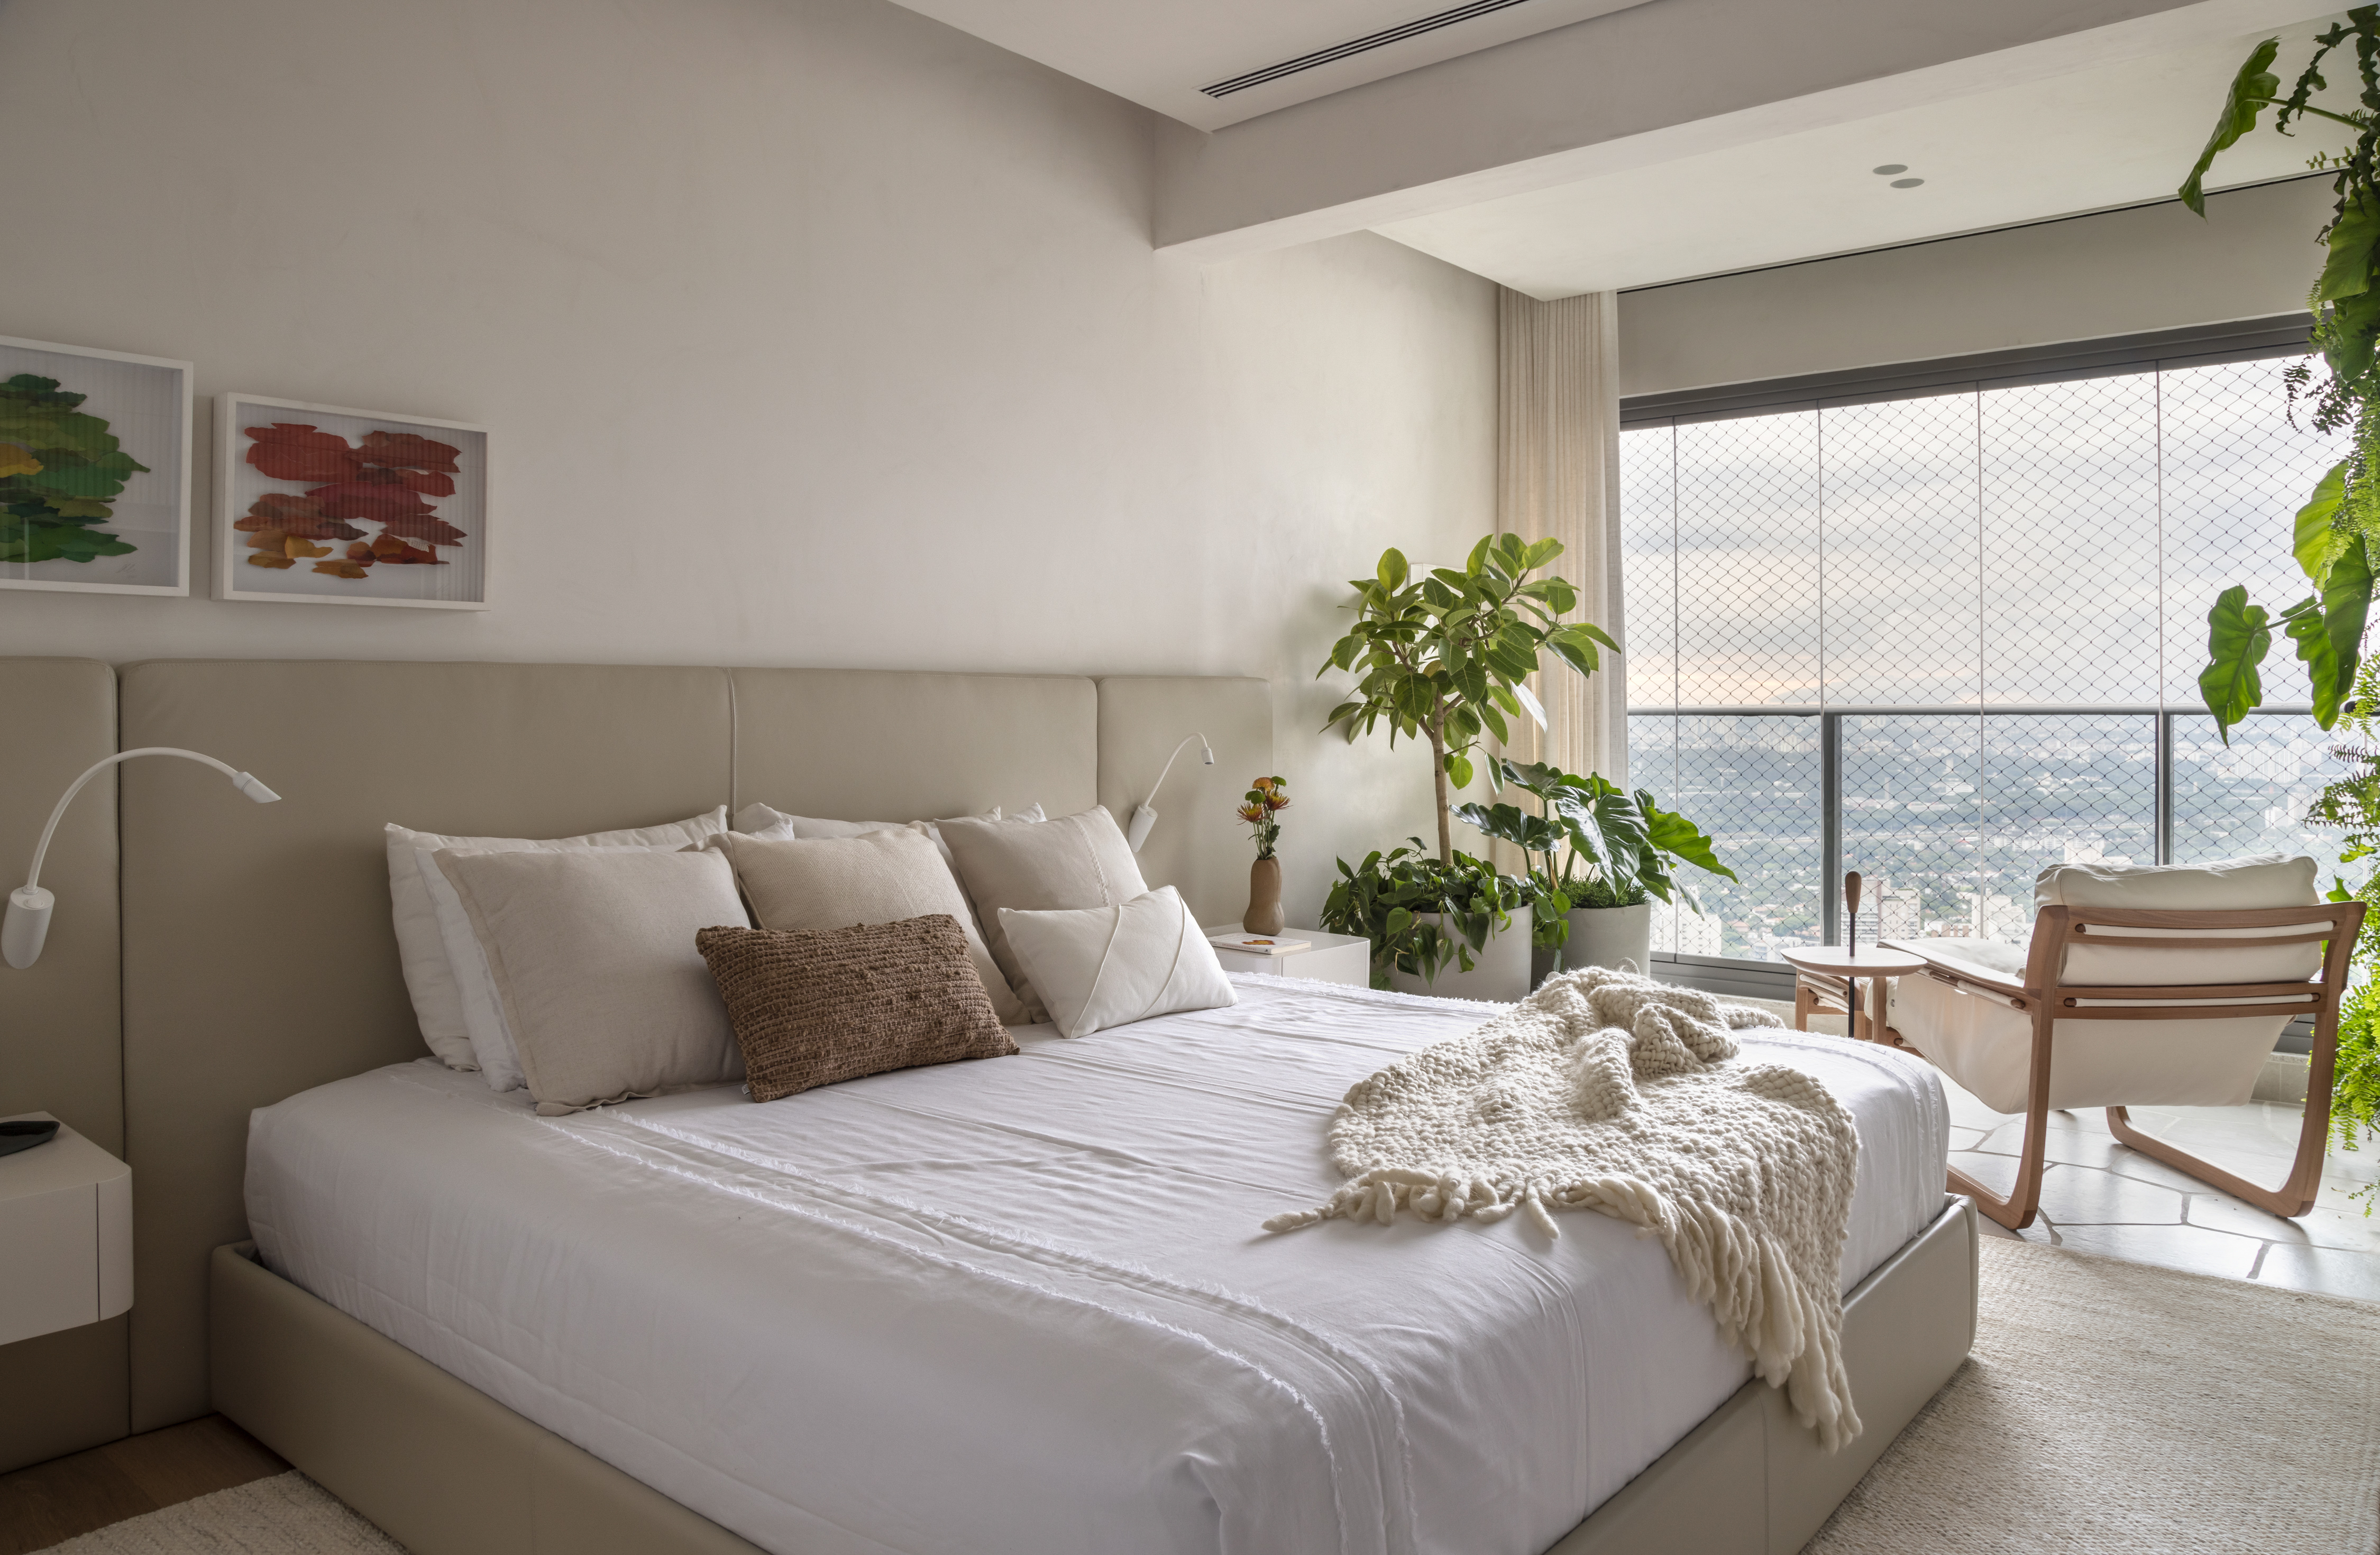 Estilo Japandi décor apê aconchegante 275 m² Si Saccab decoracao escandinavo neutro quarto casal cama varanda cabeceira planta